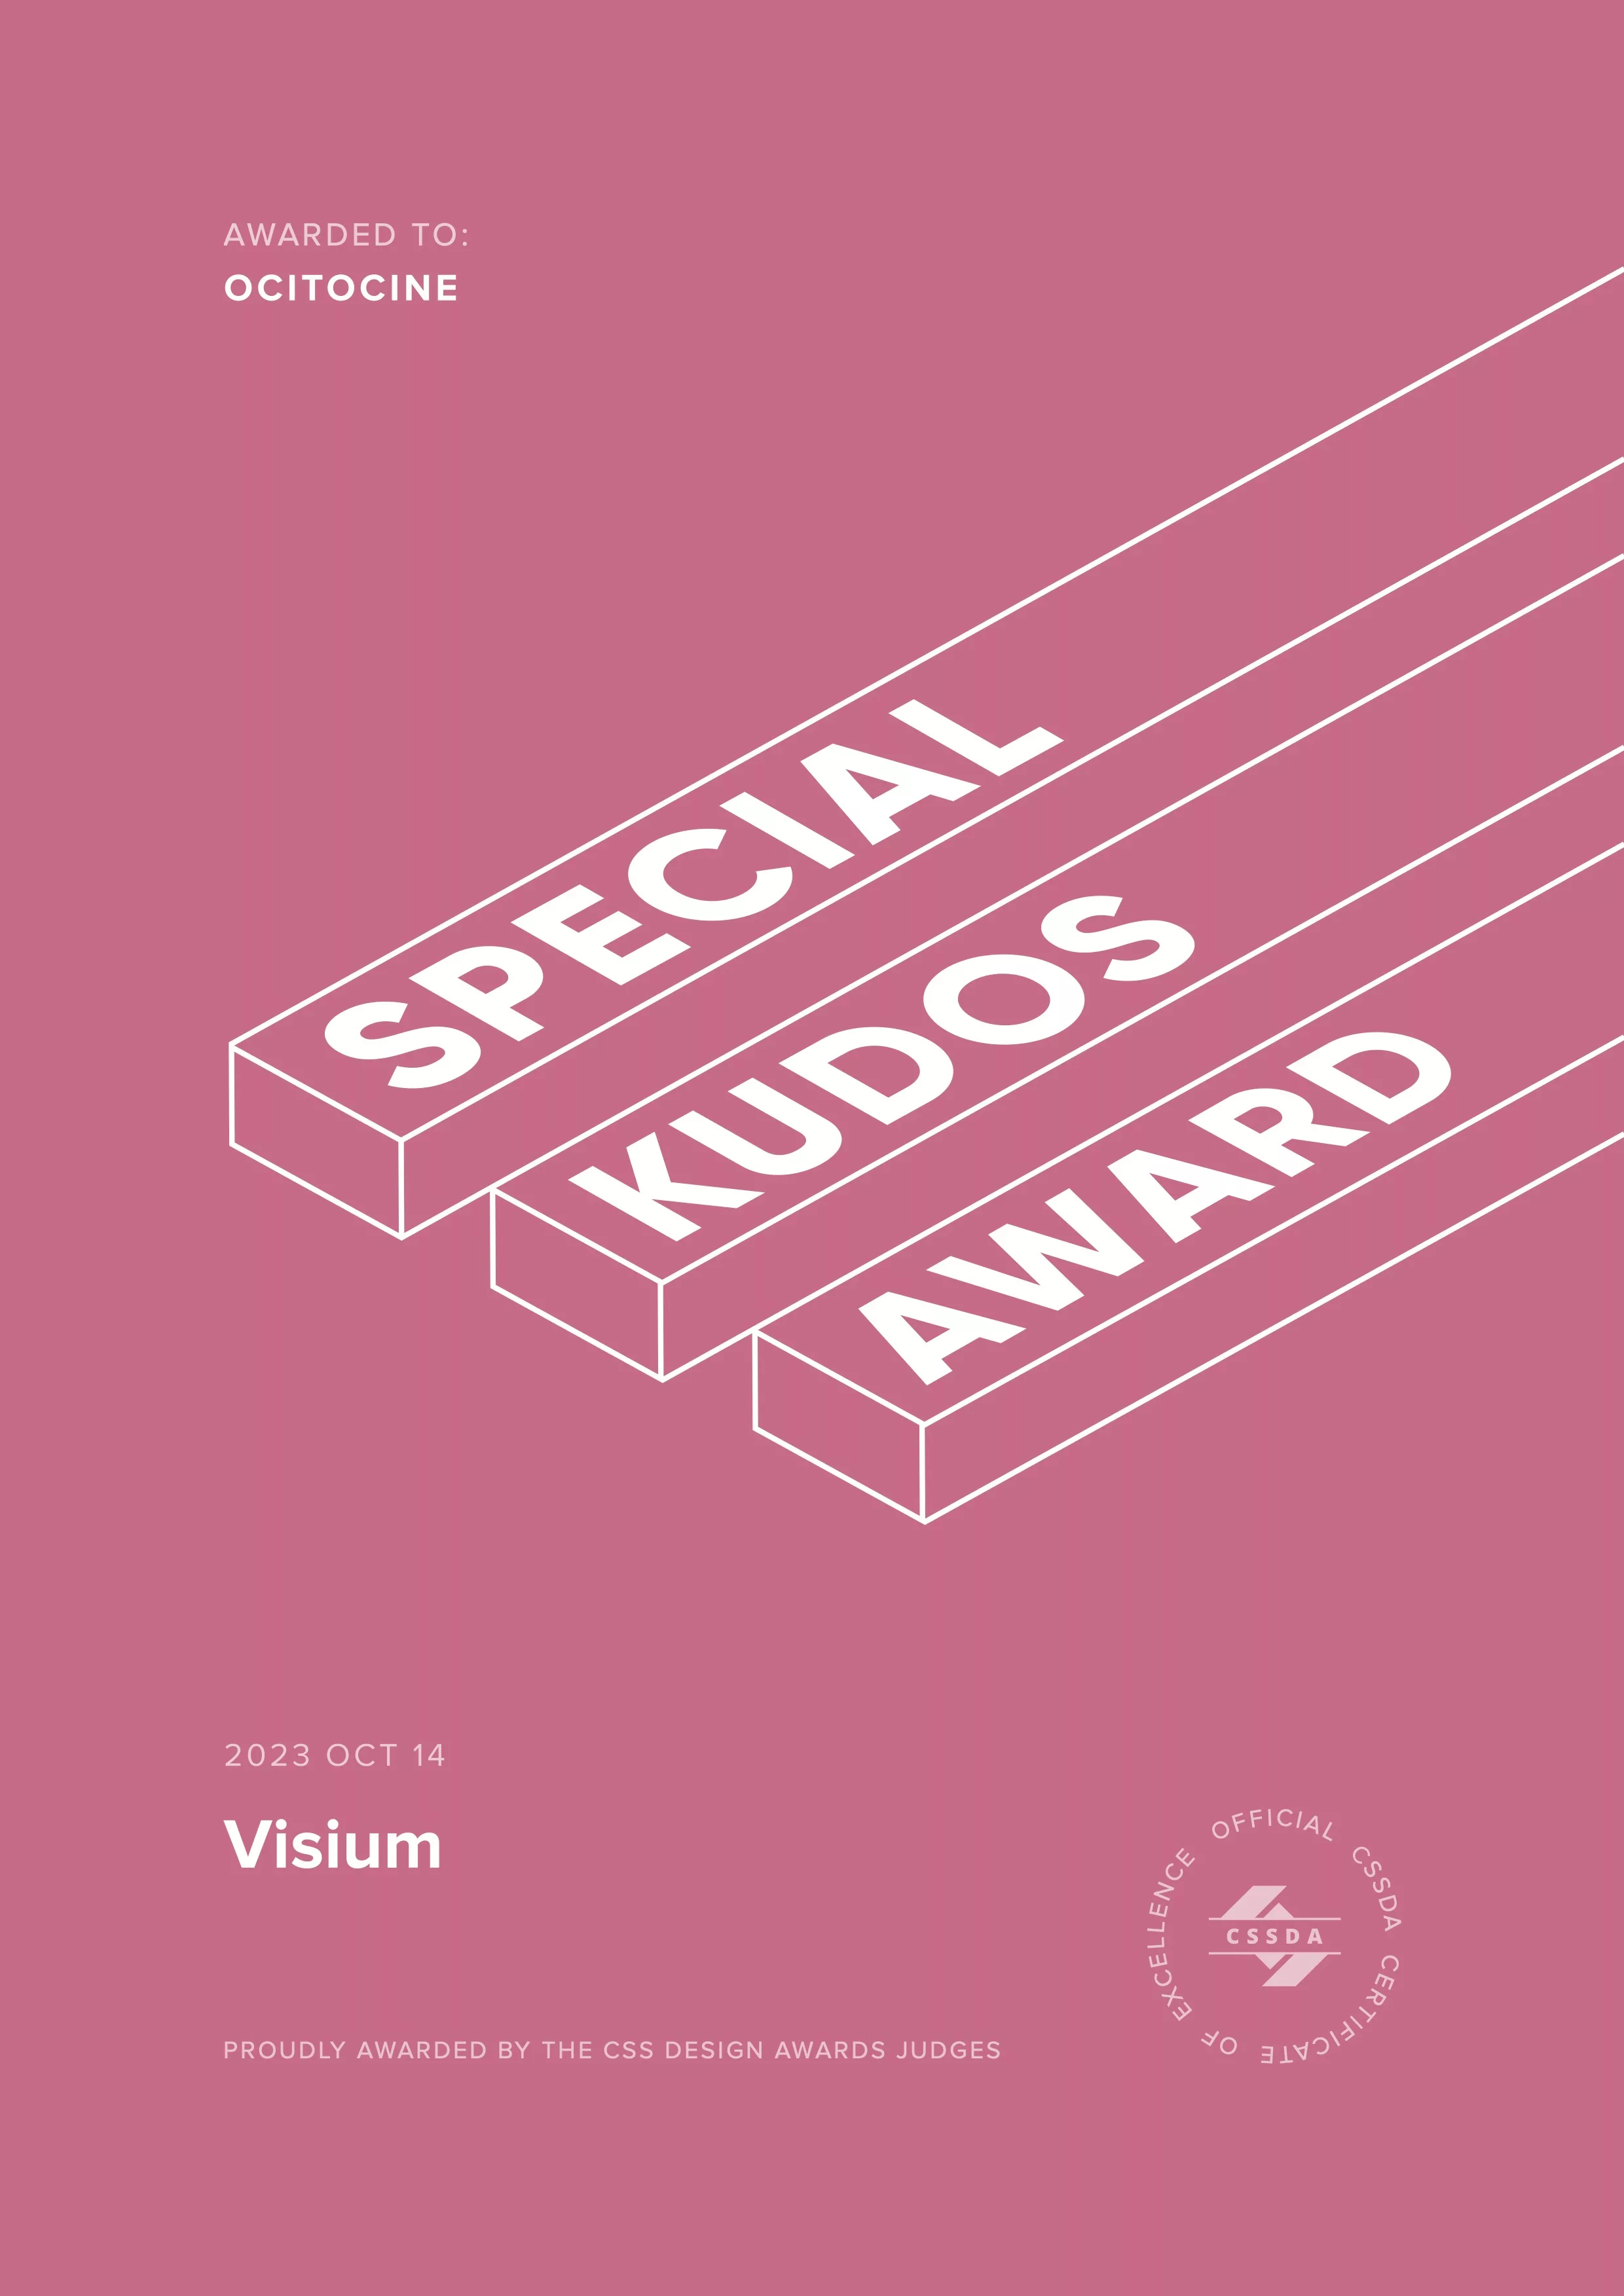 Ocitocine, agence créative web et branding, a remporté un prix "CSSDA Special Kudos Award" pour la réalisation du site web visium.ch